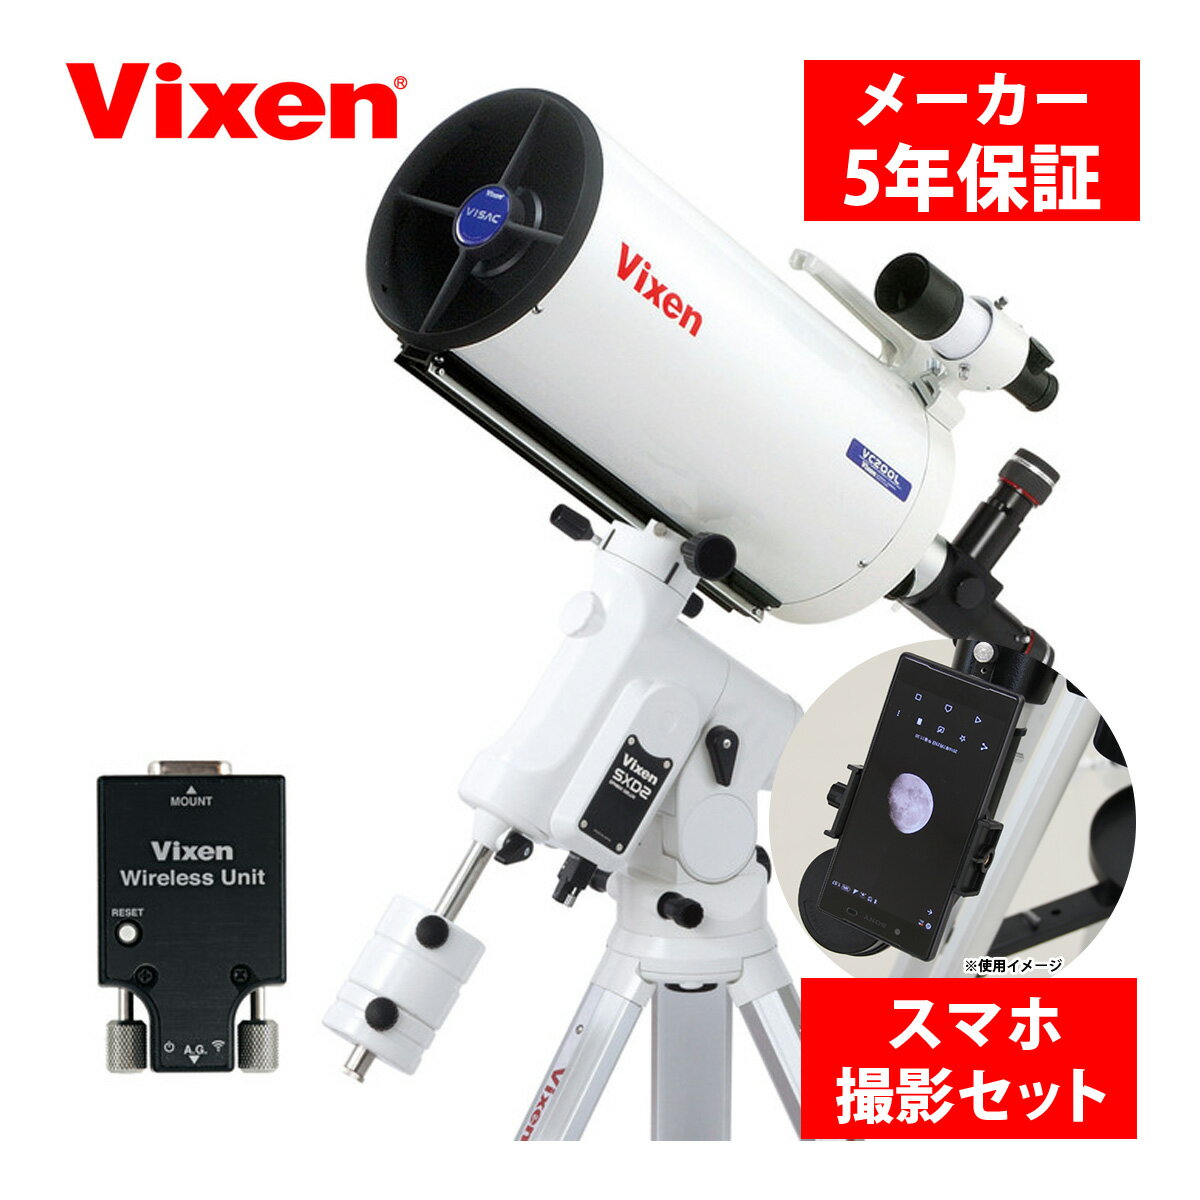 天体望遠鏡 自動追尾 SXD2WL-VC200L 三脚 スマホ 撮影 セット 赤道儀 天体観測 星 星空ガイドブック付き スマートフォン タブレット ipad 操作 ビクセン Vixen